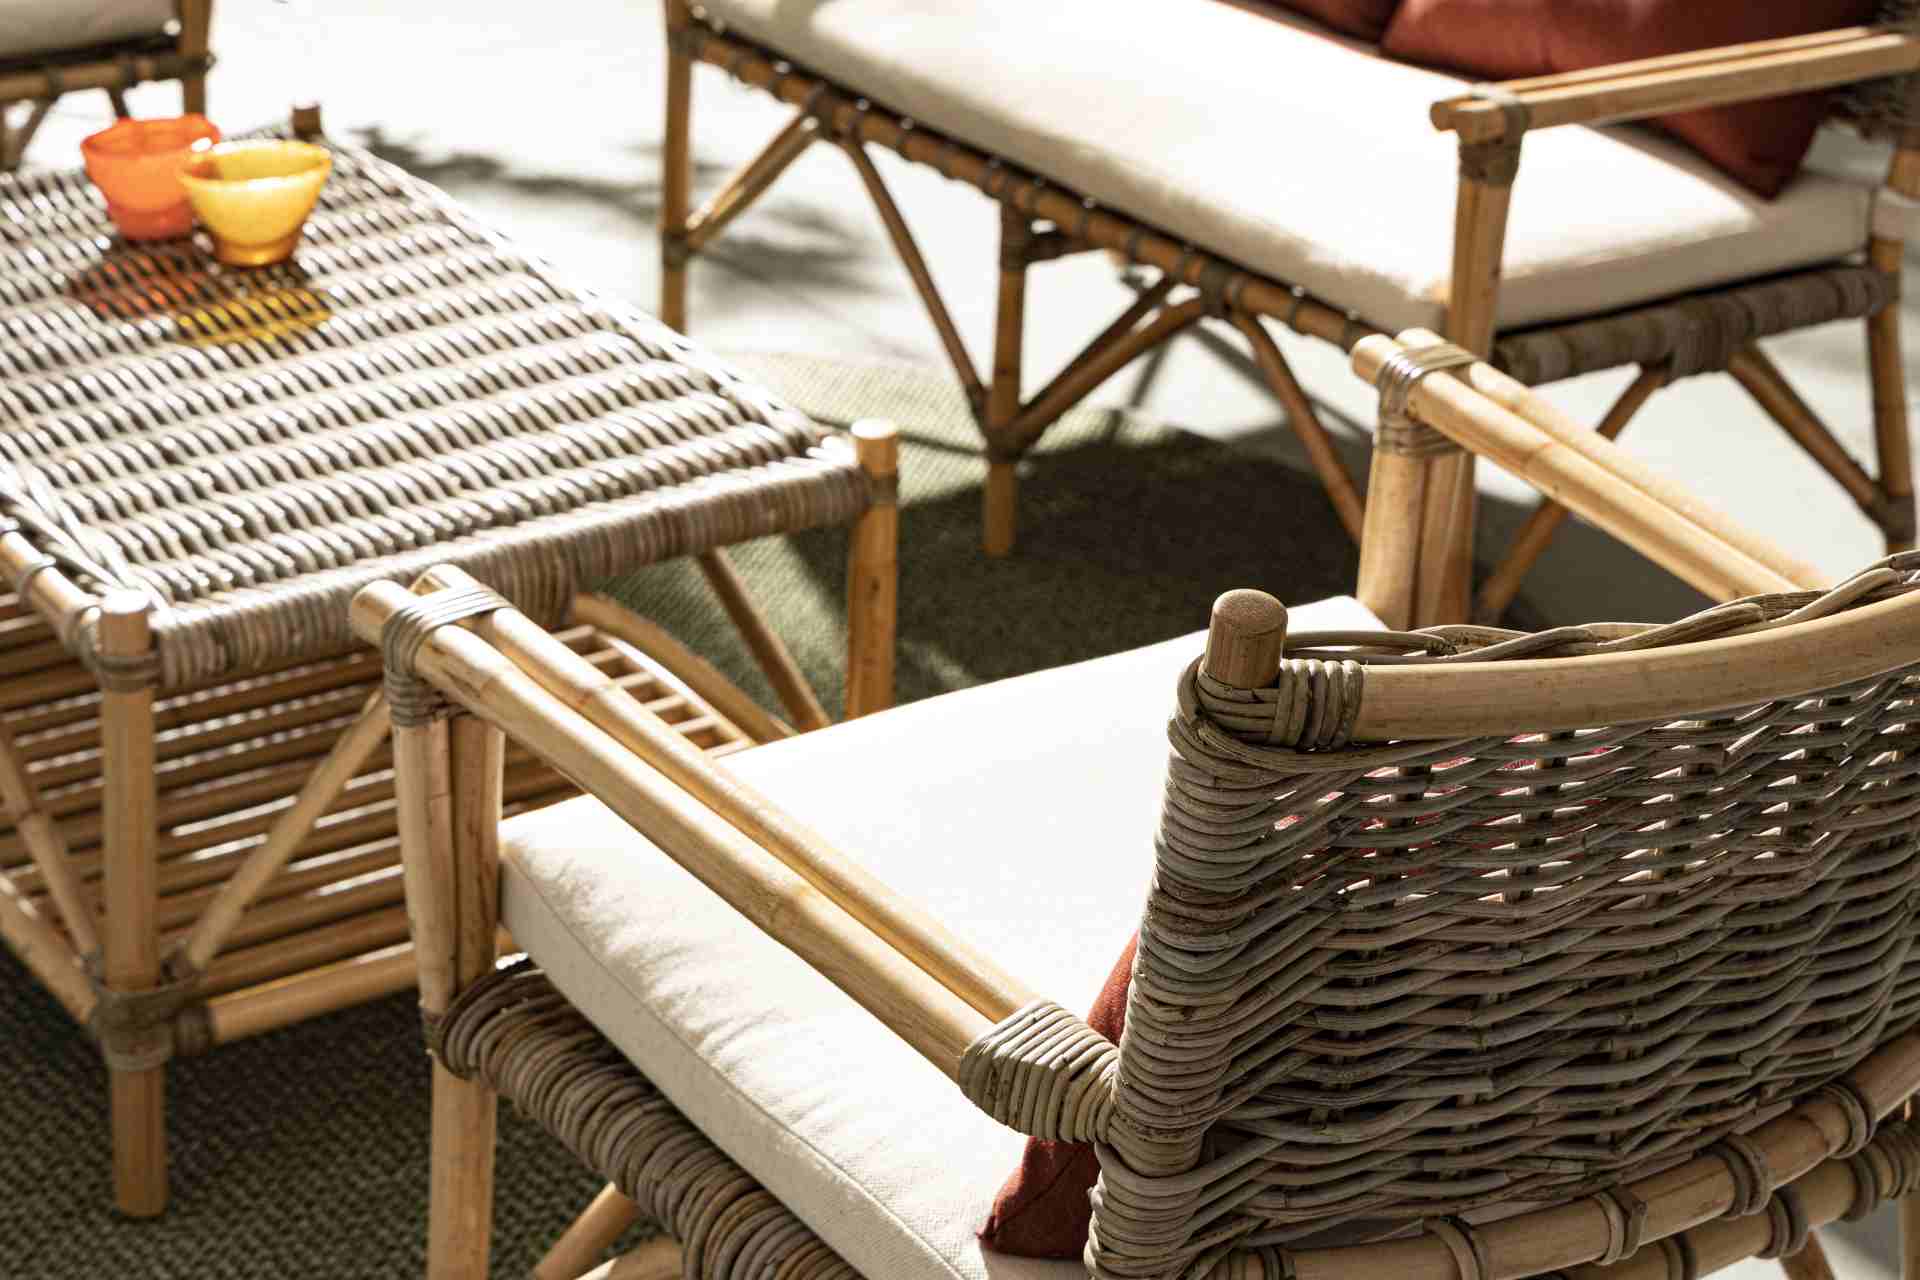 Der Gartensessel Tarifa überzeugt mit seinem klassischen Design. Gefertigt wurde er aus Kubu, welches einen braunen Farbton besitzt. Das Gestell ist aus Rattan und hat eine natürliche Farbe. Der Sessel verfügt über eine Sitzhöhe von 43 cm und ist für den 